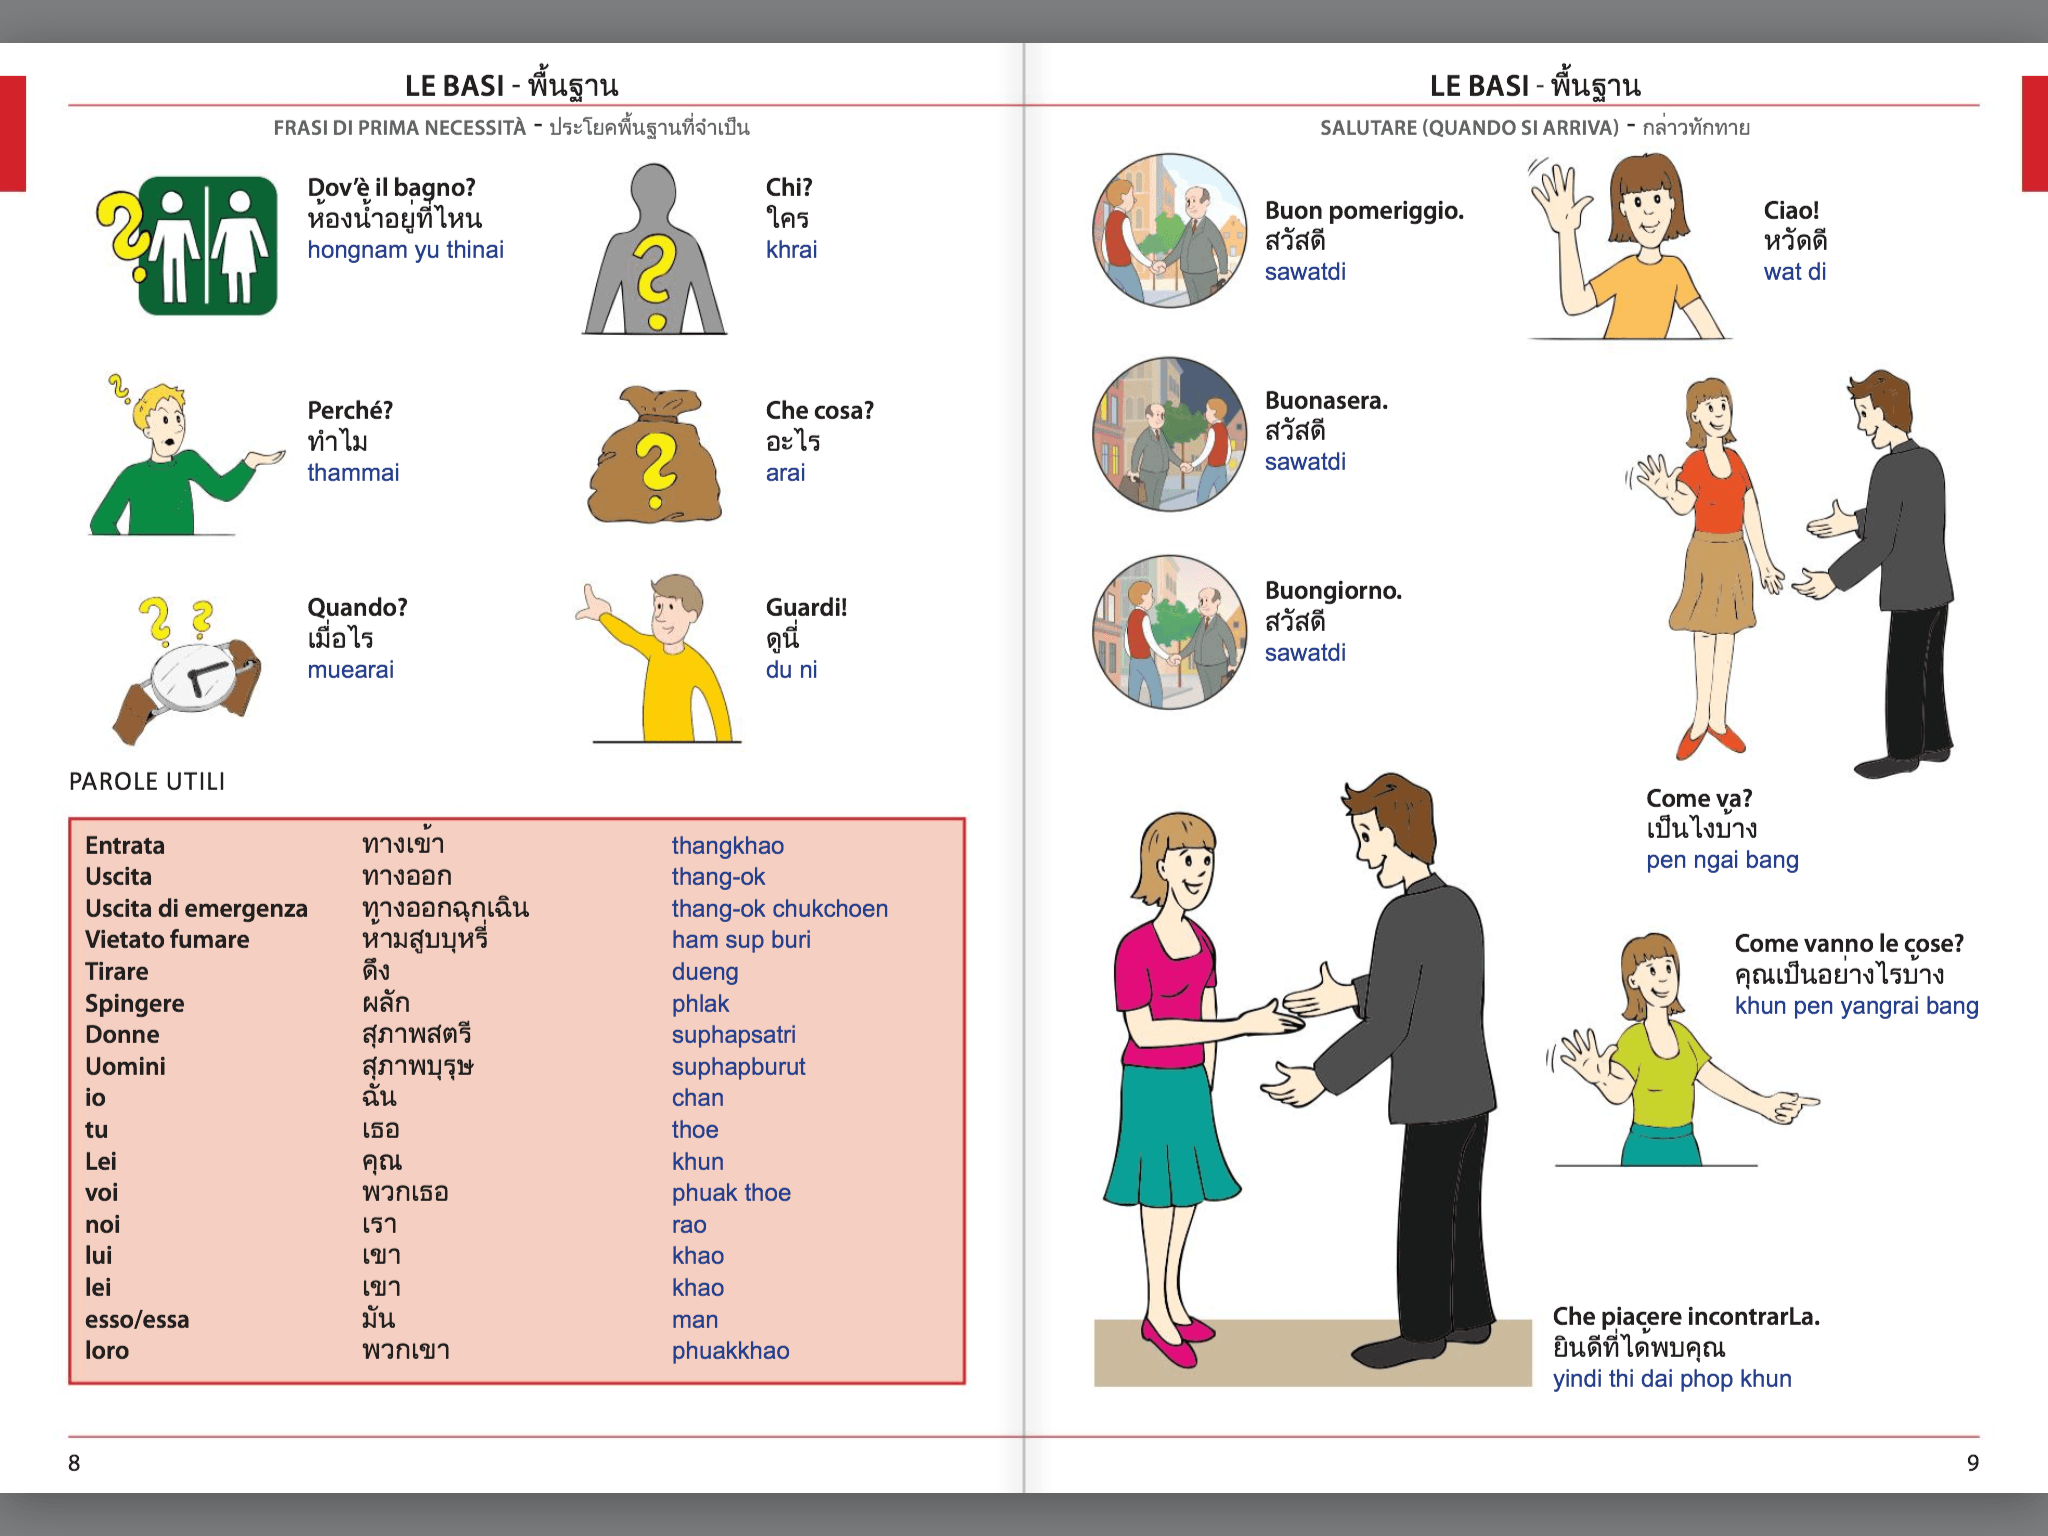 Manuale di conversazione illustrato Italiano-Thai